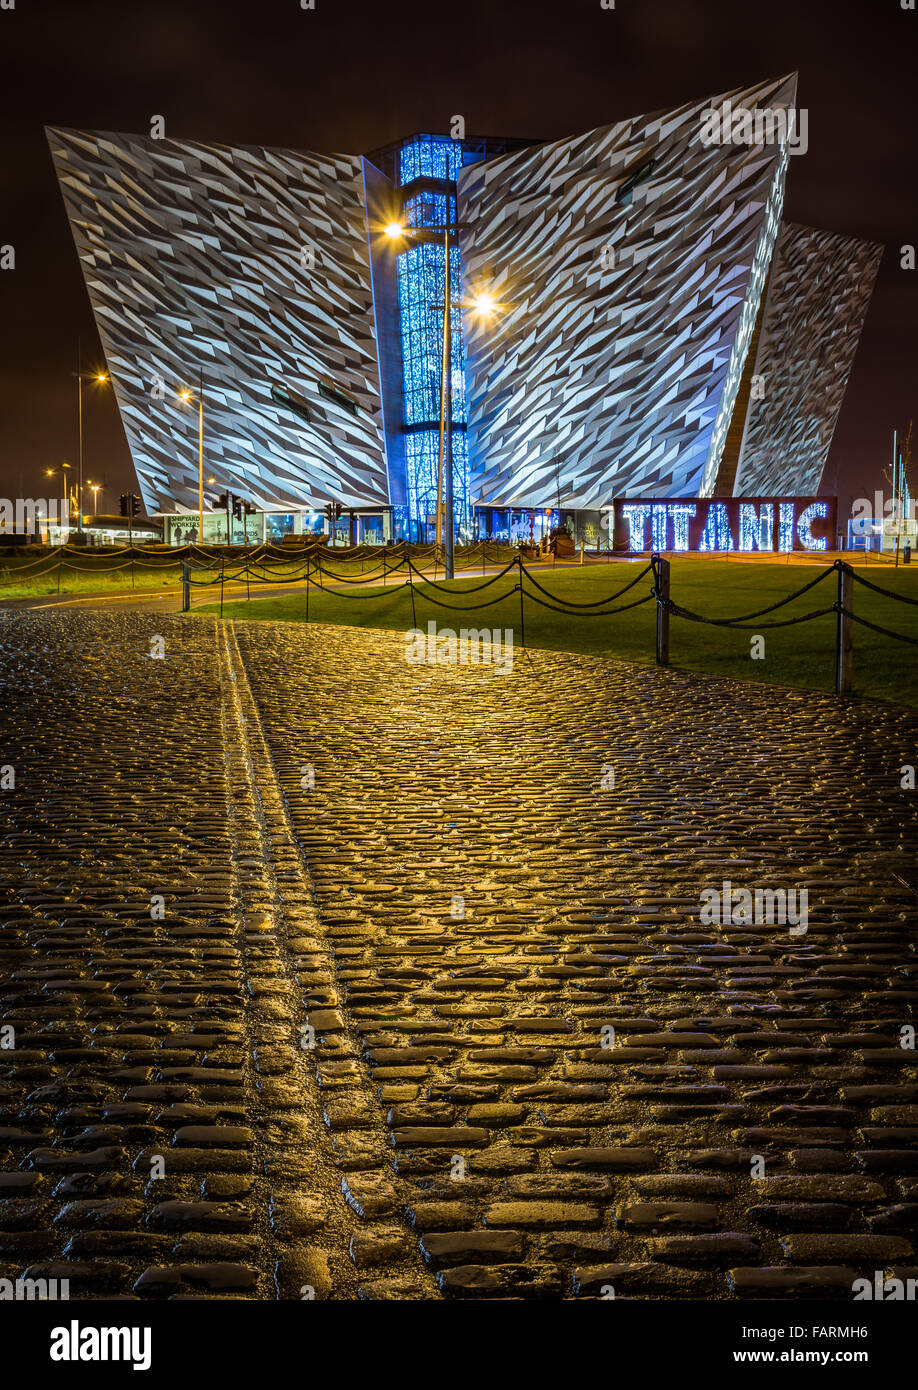 Belfast's iconic Titanic building. Stock Photo